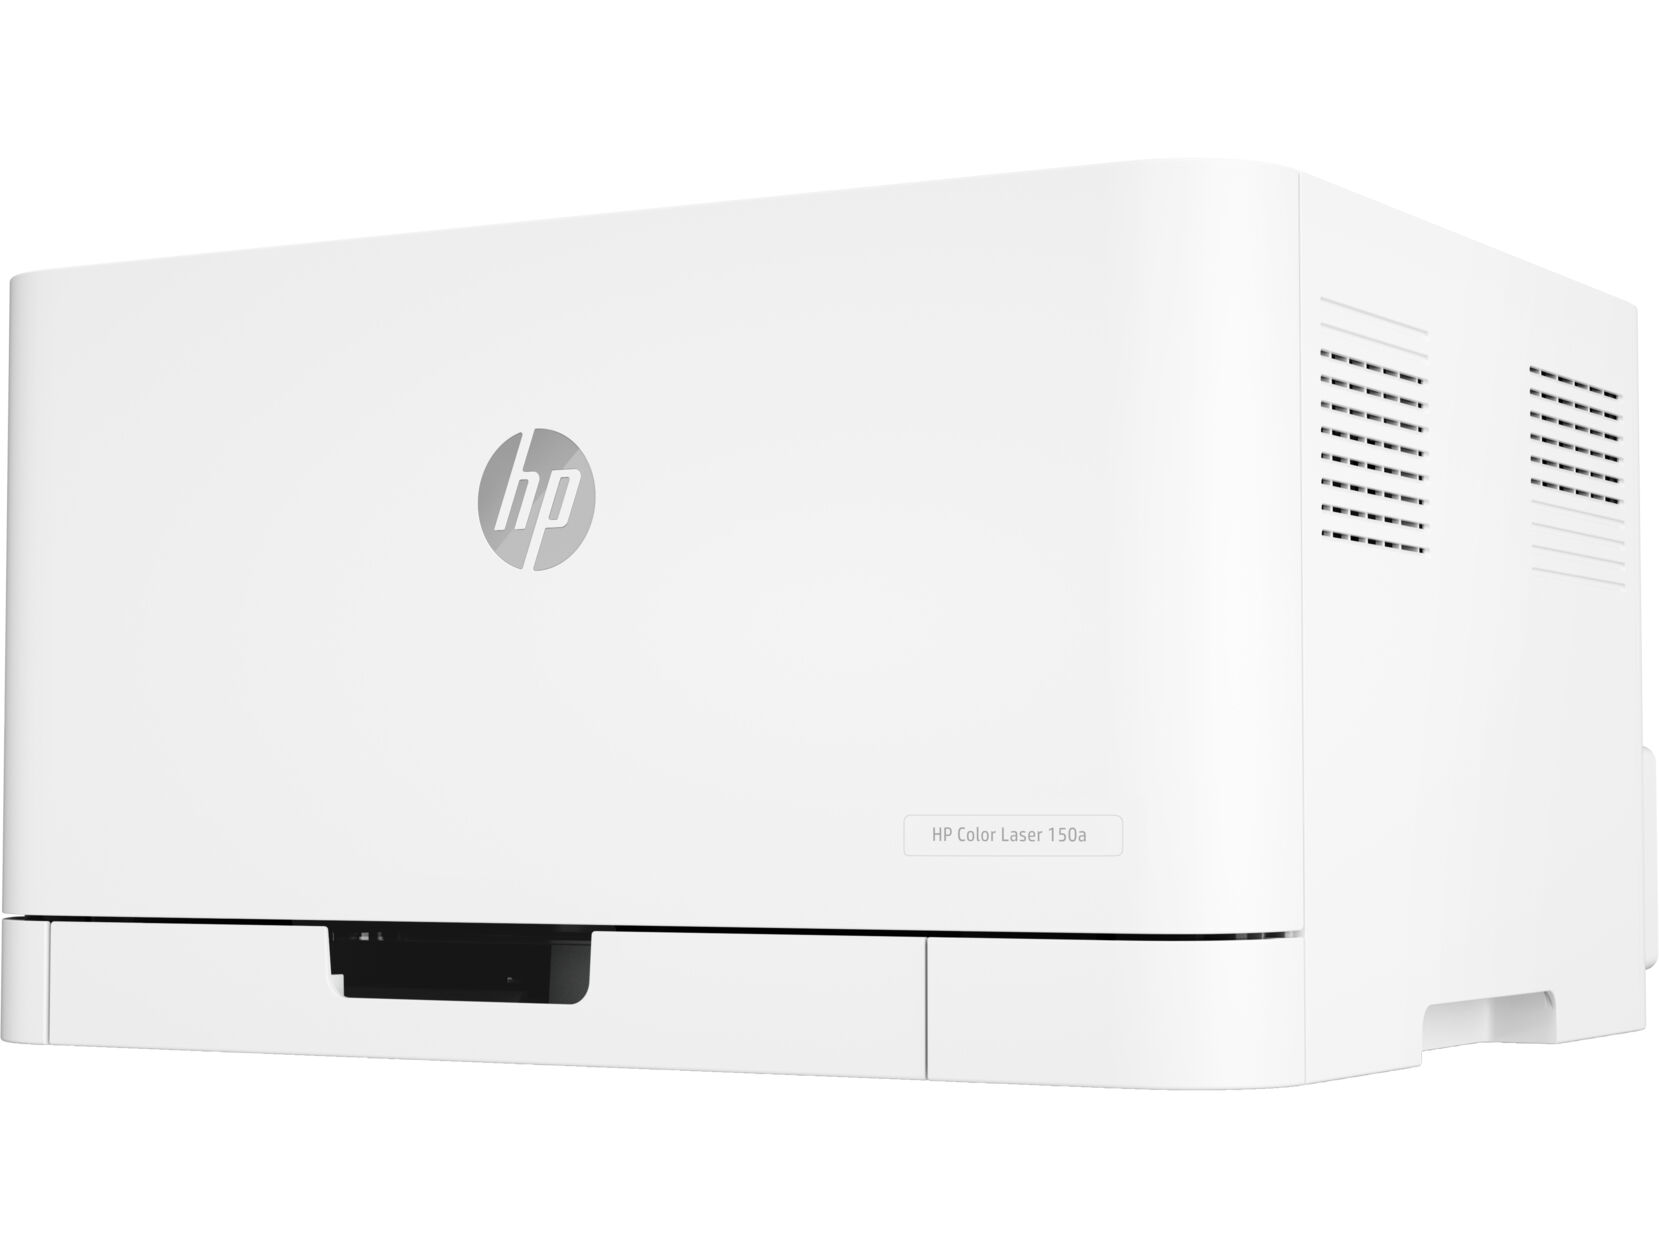 Принтер HP HP Color Laser 150a 4ZB94A/A4 цветной/печать Лазерный 600x600dpi 18стр.мин/